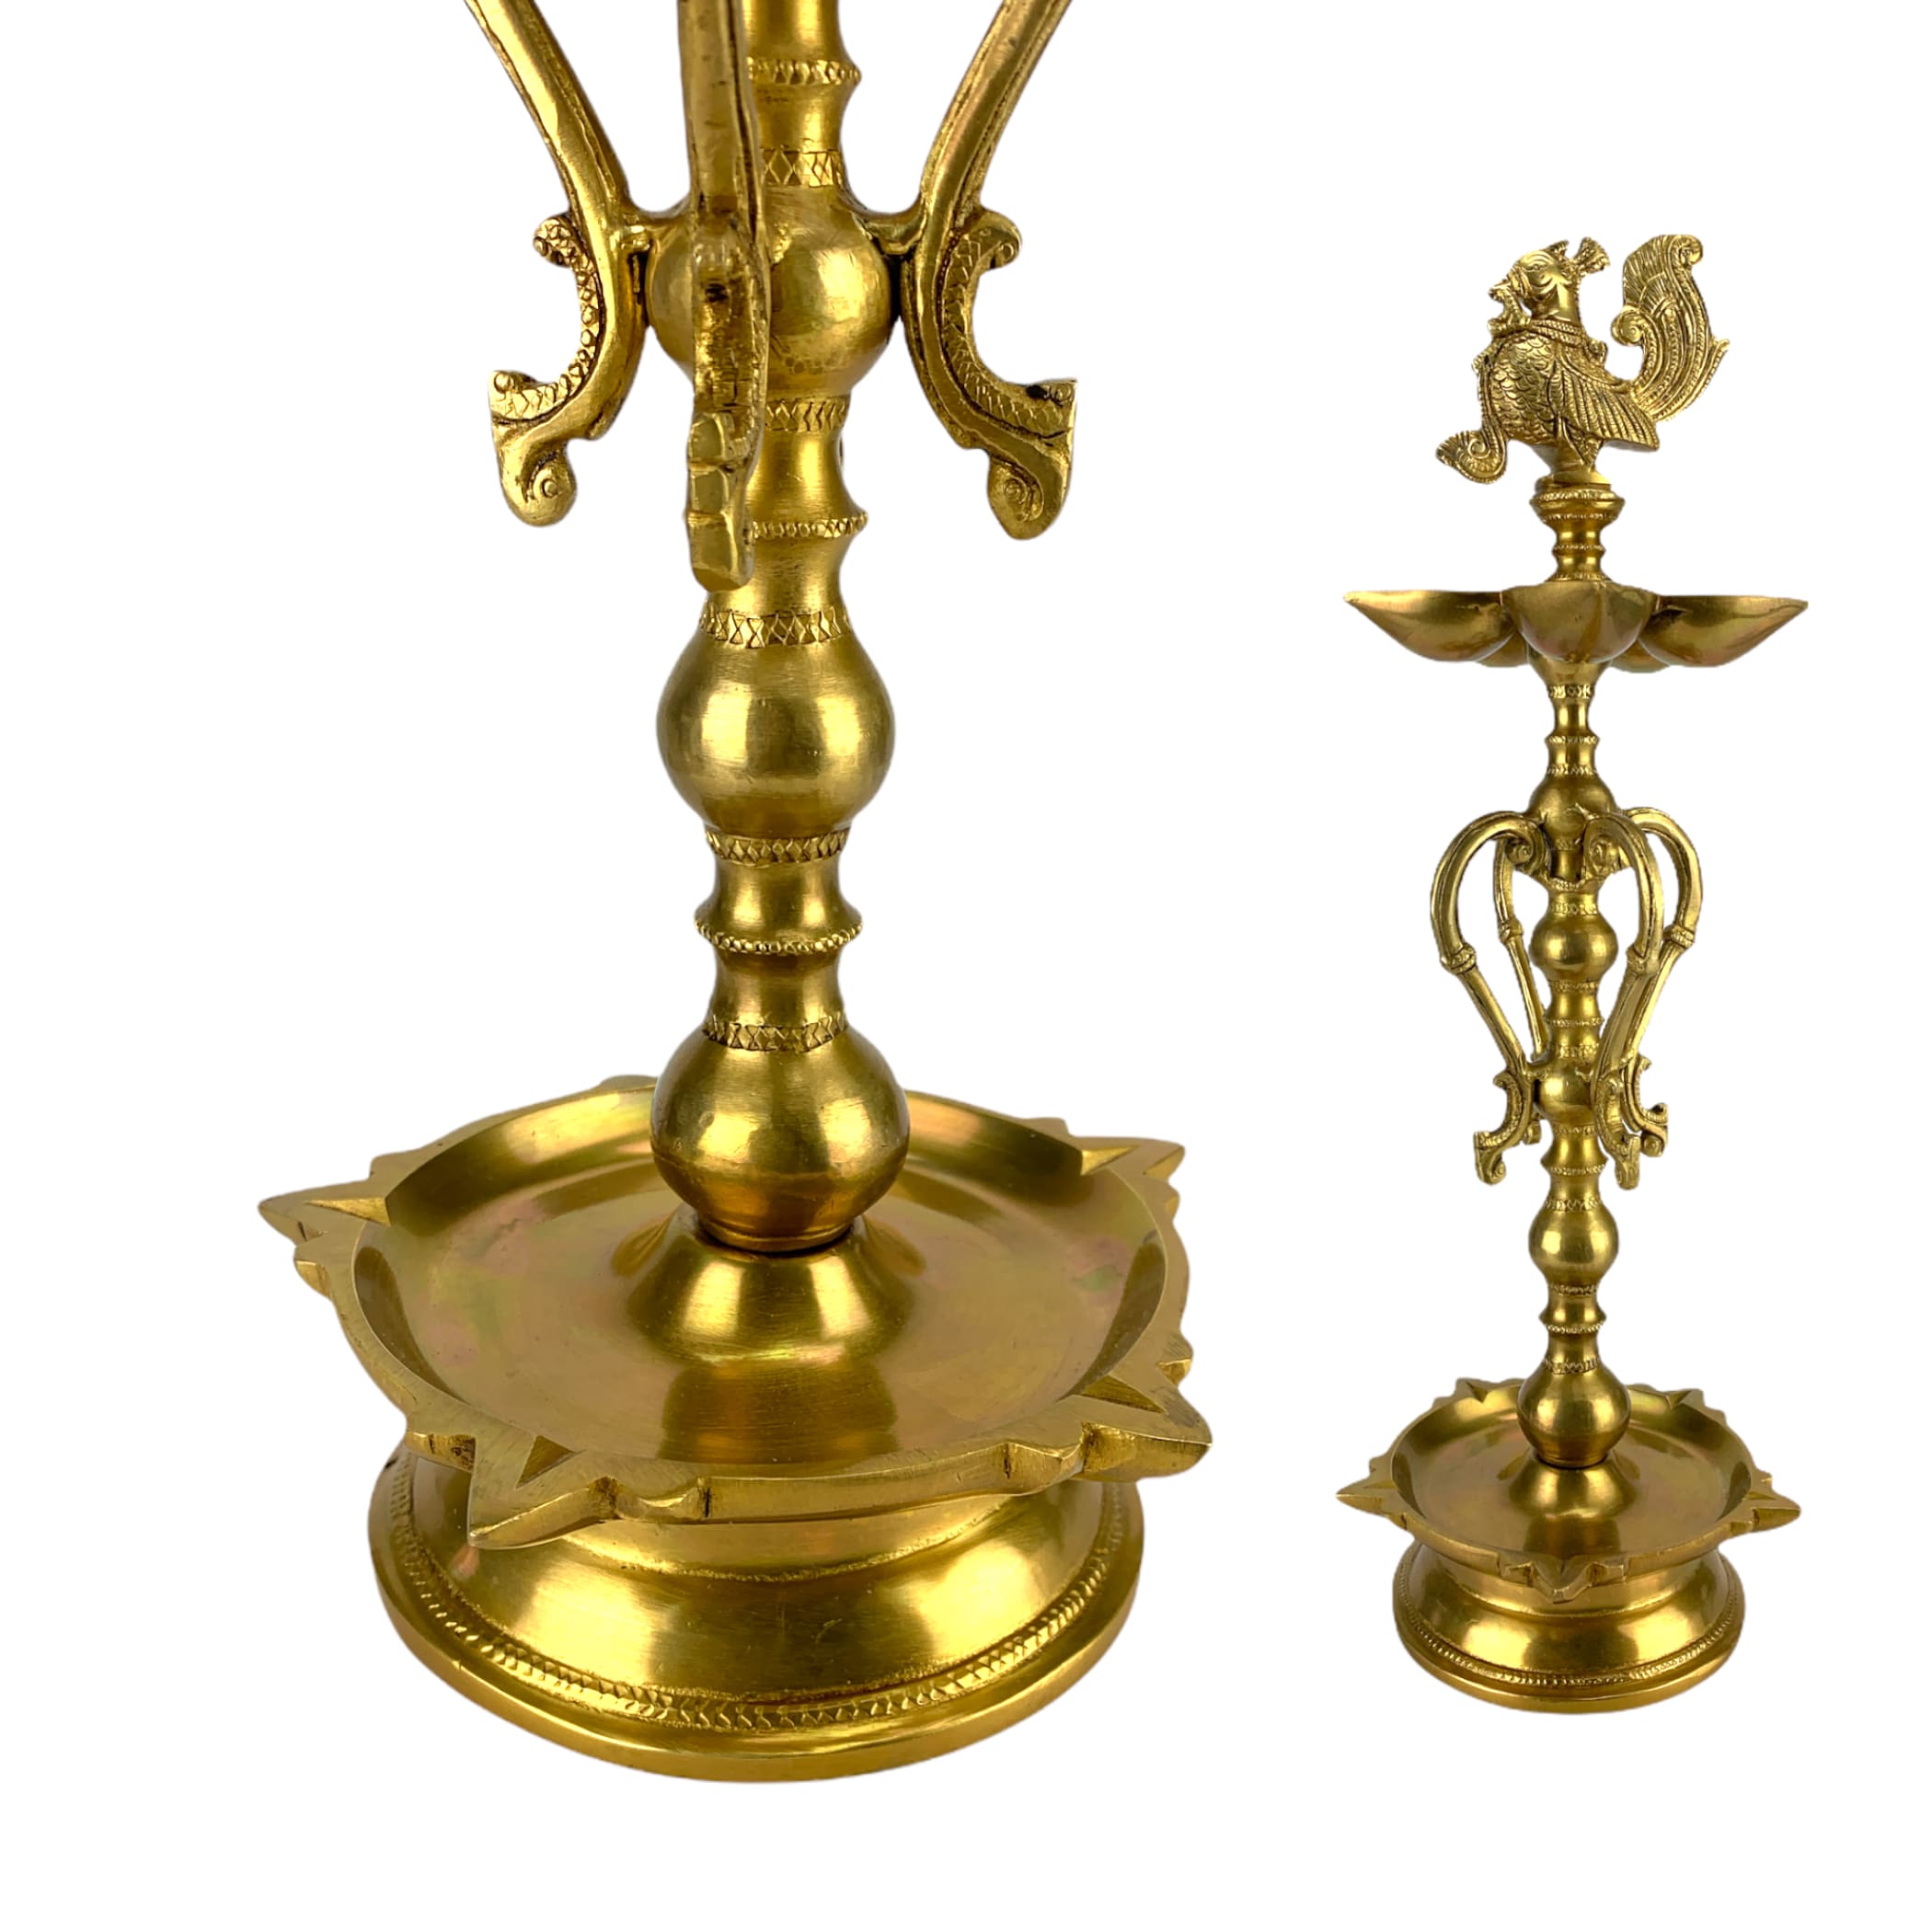 Large peacock brass oil tall diya samai diwali decor lamp